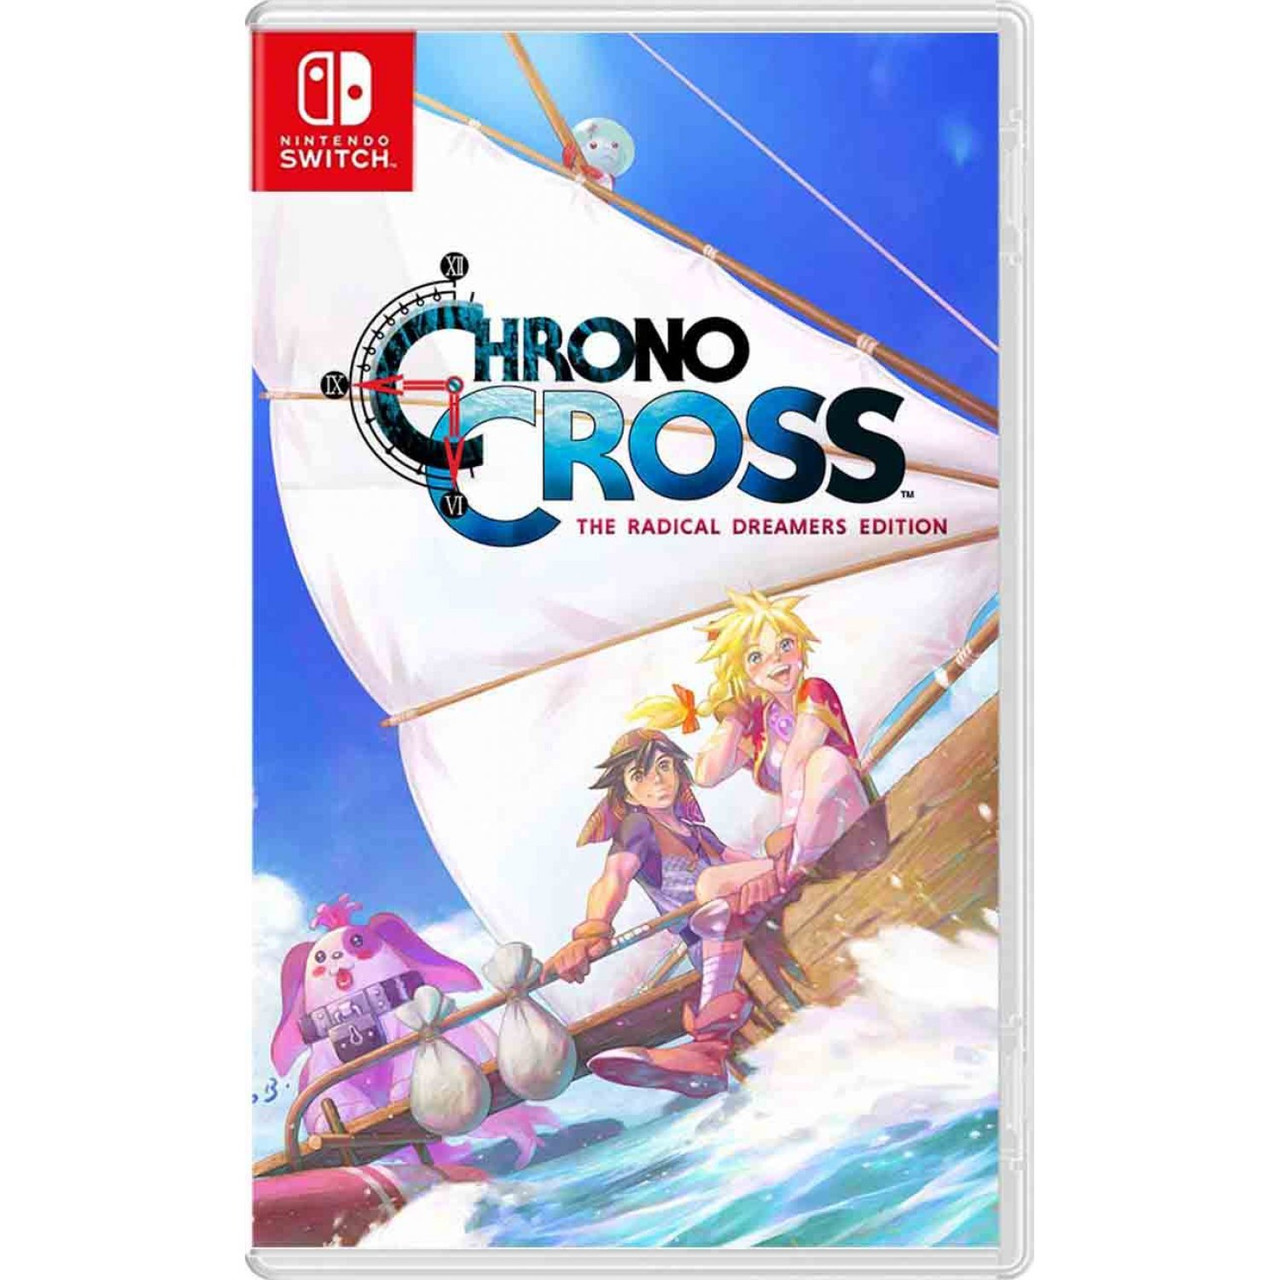 Chrono Cross Dreamers: Photo  Chrono cross, Chrono trigger, Anime